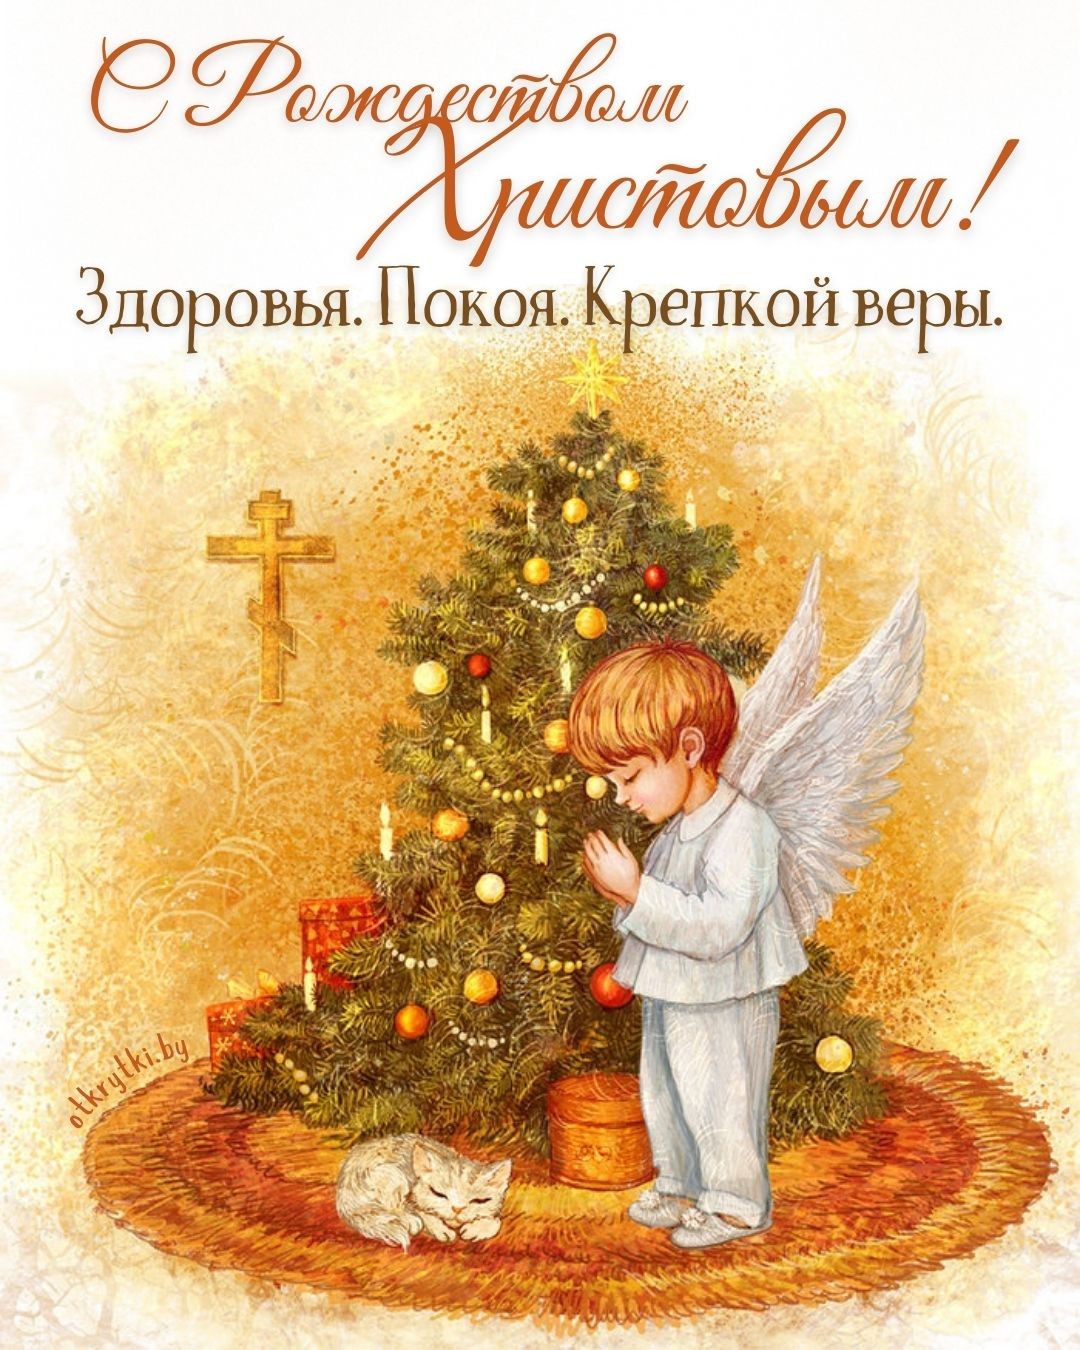 Красивая открытка с Рождеством Христовым с пожеланием